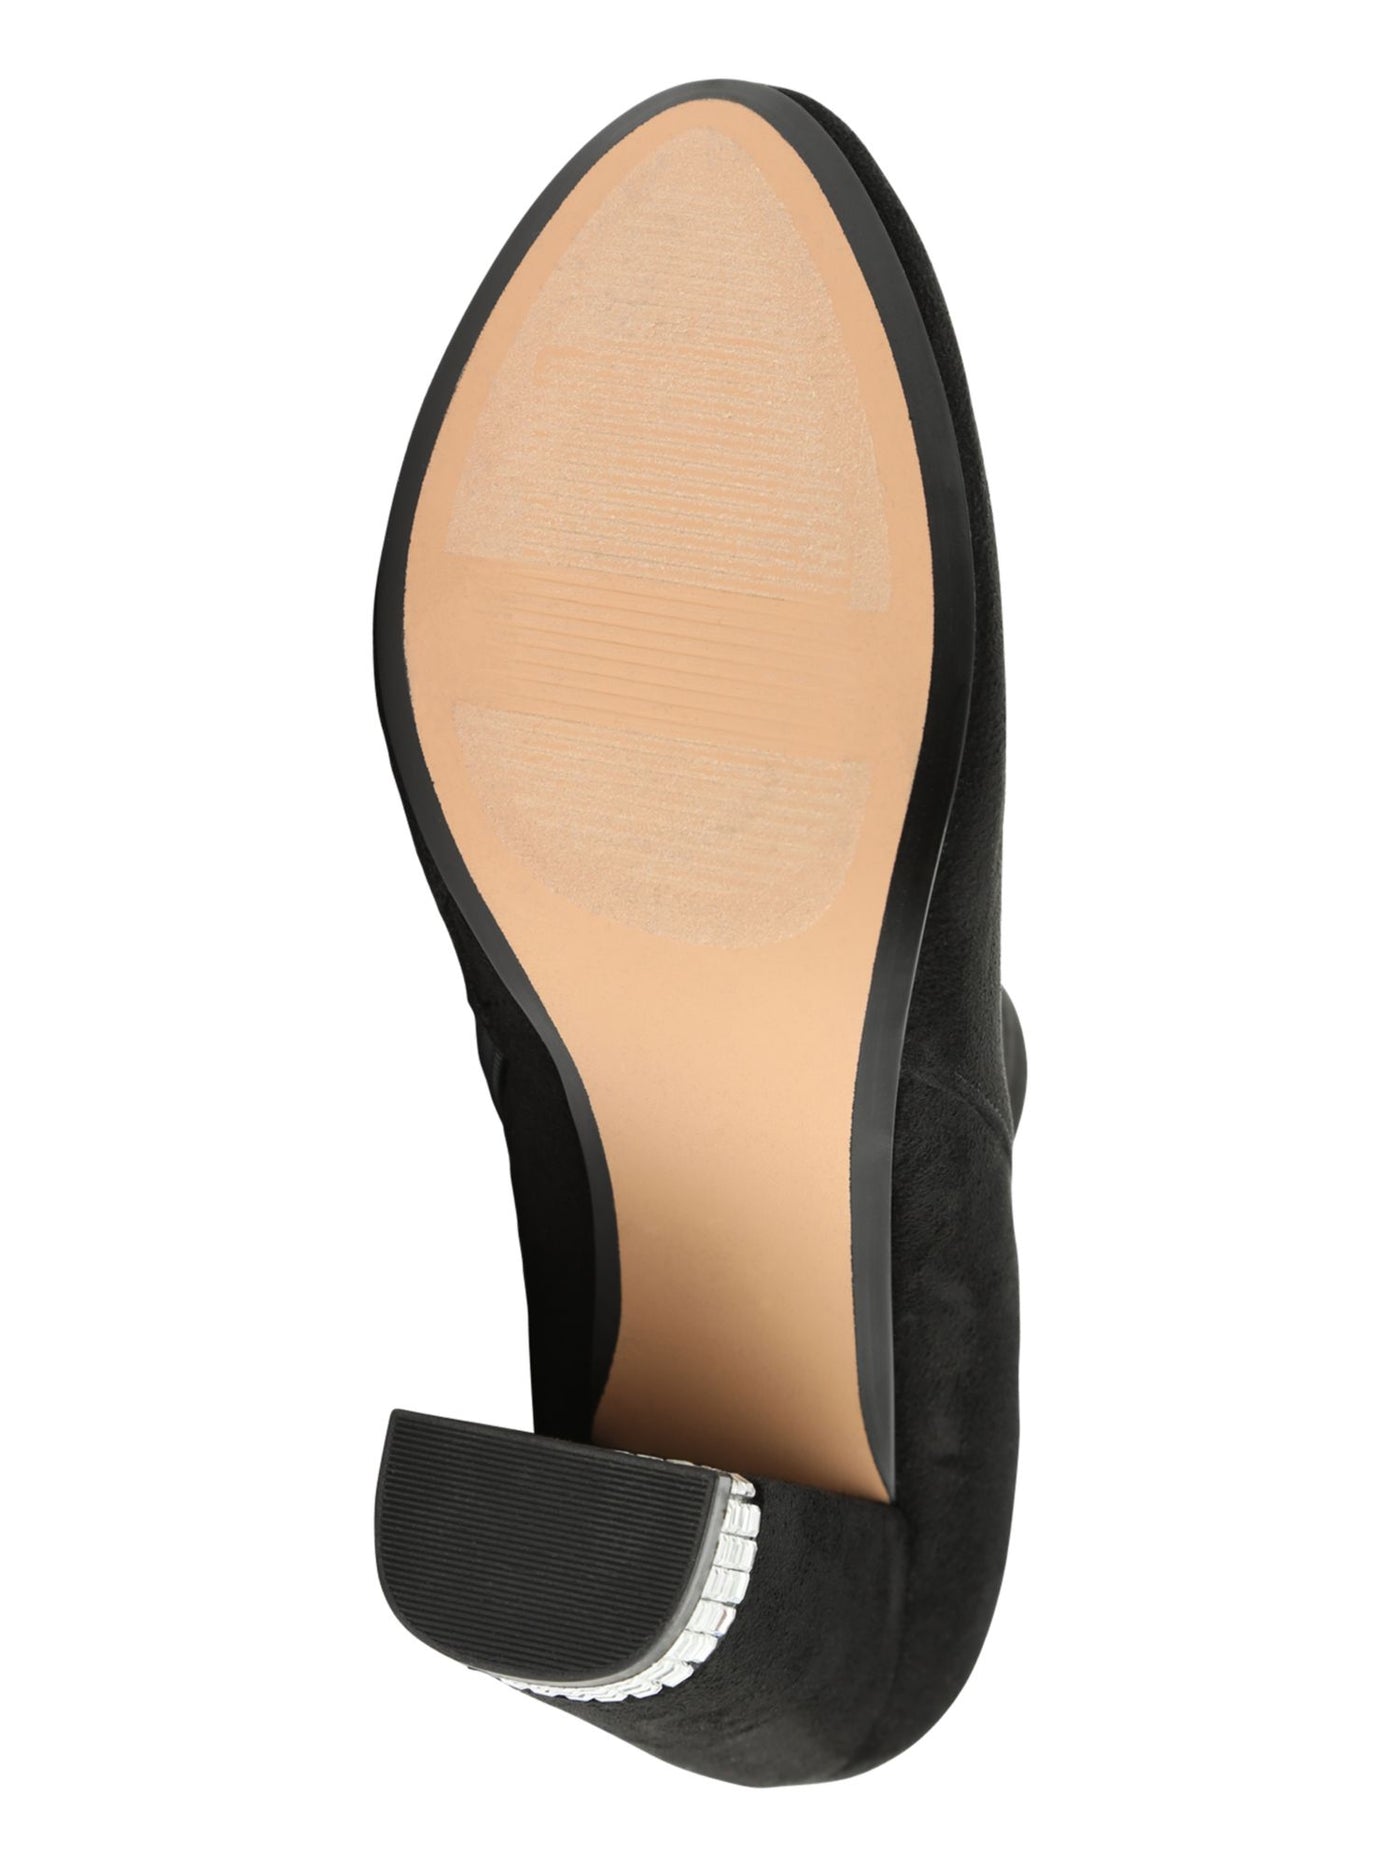 XOXO Womens Black Rhinestone Heel Comfort Yardria Round Toe Block Heel Zip-Up Boots Shoes 9.5 M